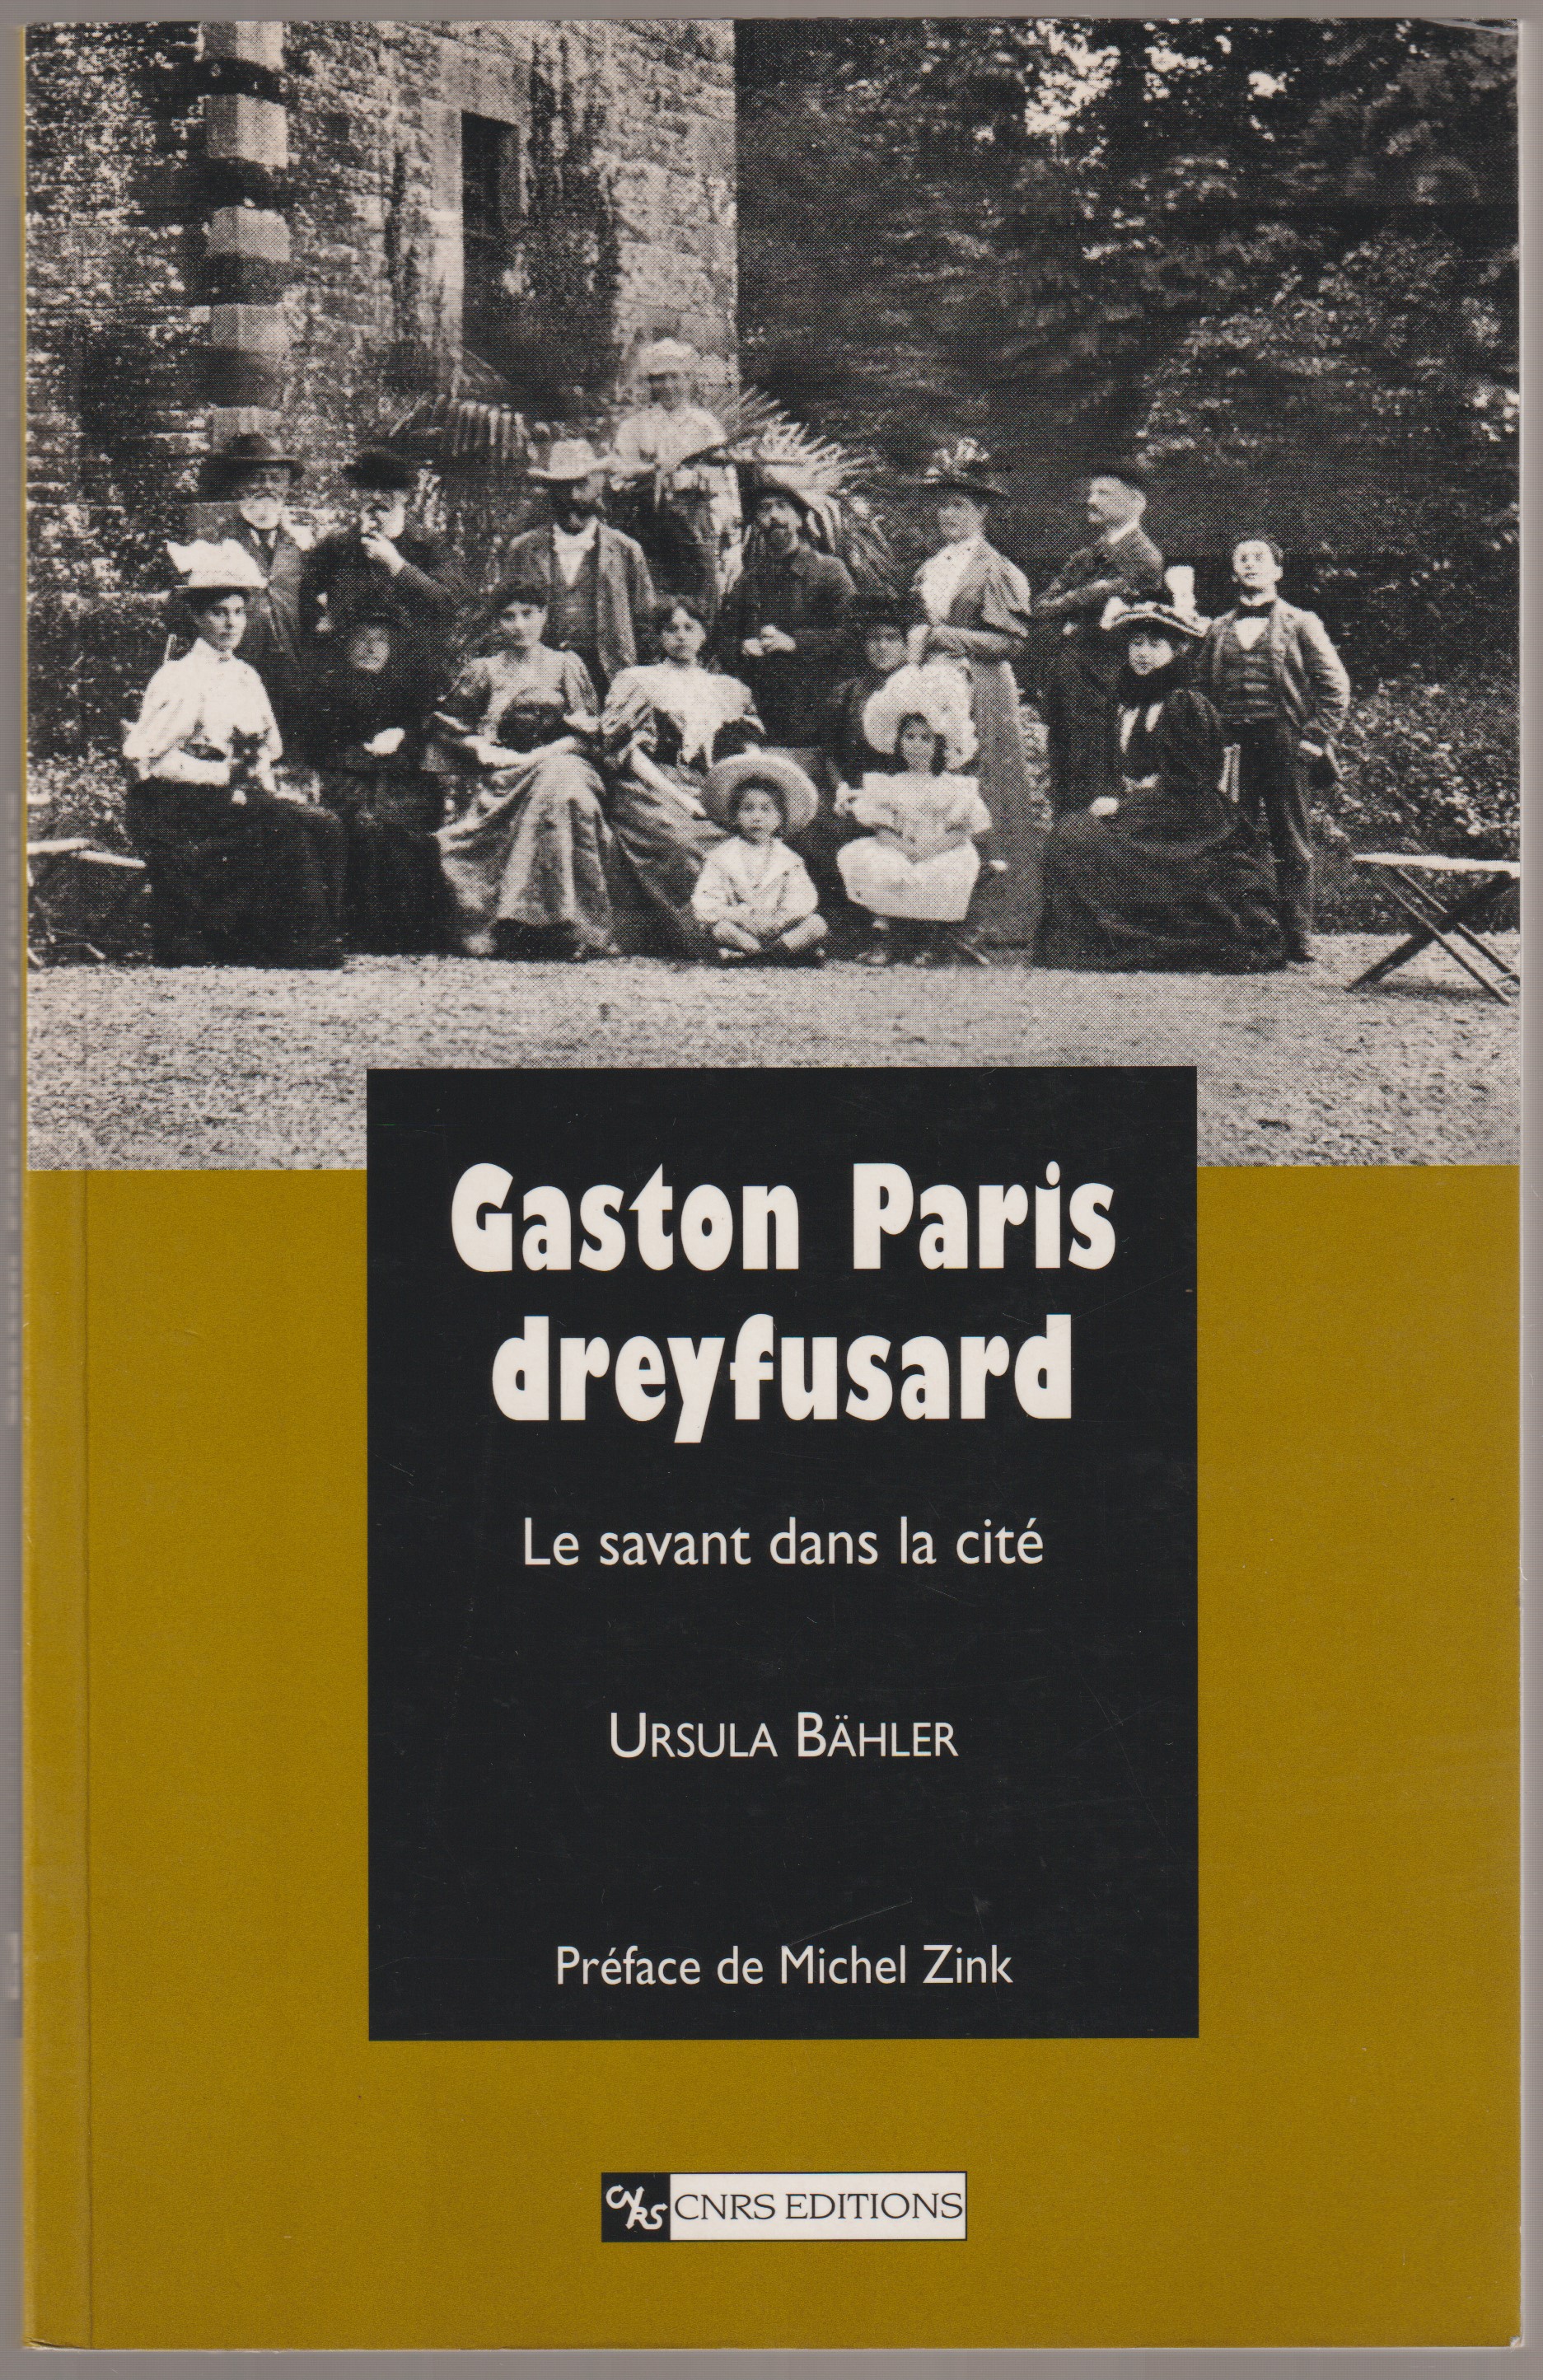 Gaston Paris dreyfusard : le savant dans la cite.